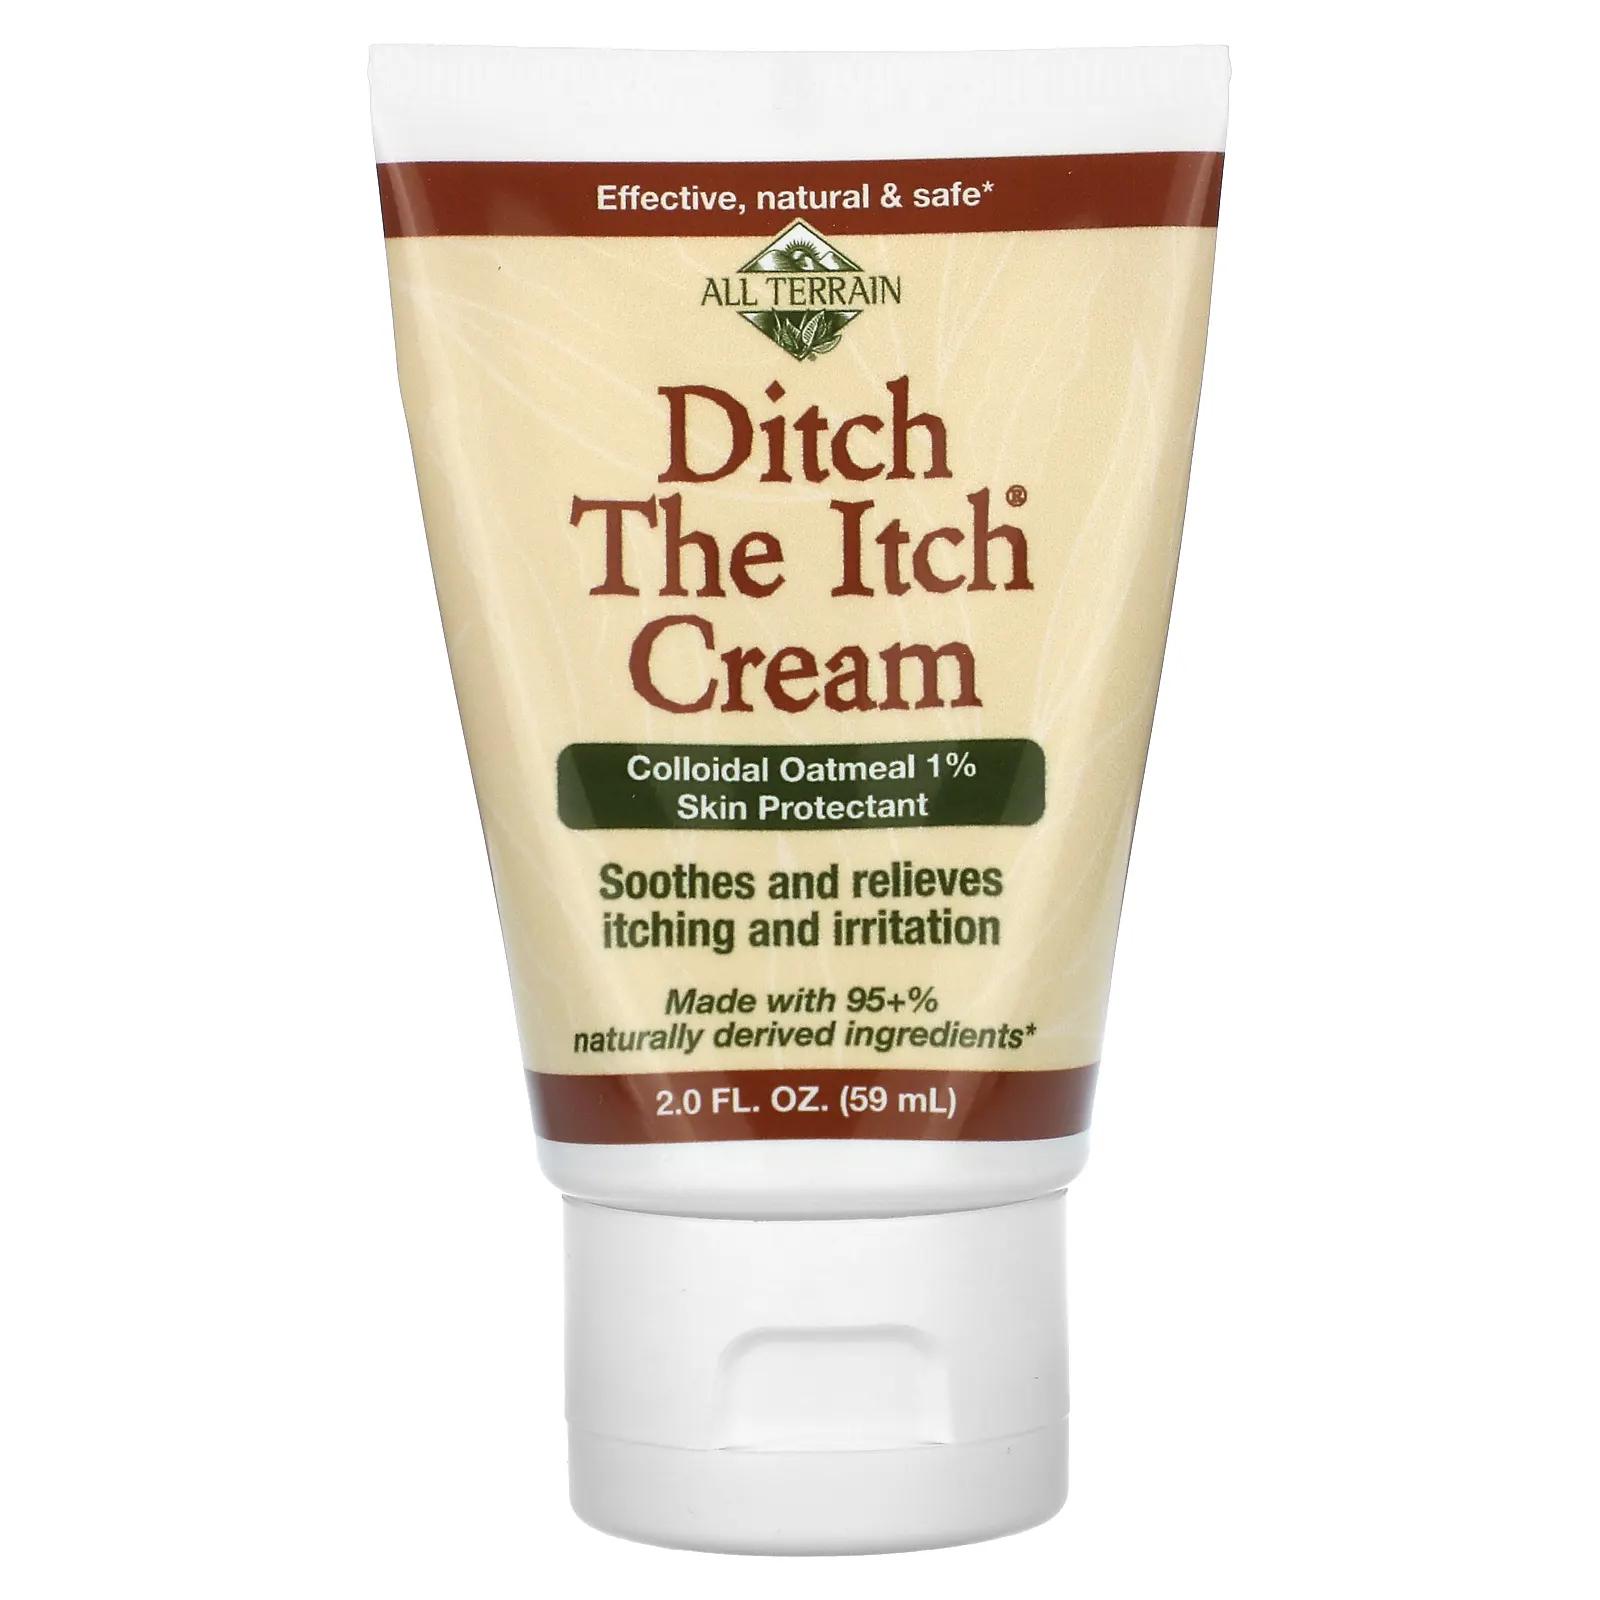 All Terrain Ditch The Itch Cream крем для защиты кожи с коллоидной овсянкой 1% 59 мл (2 жидк. унции) all terrain детские бинты 20 шт